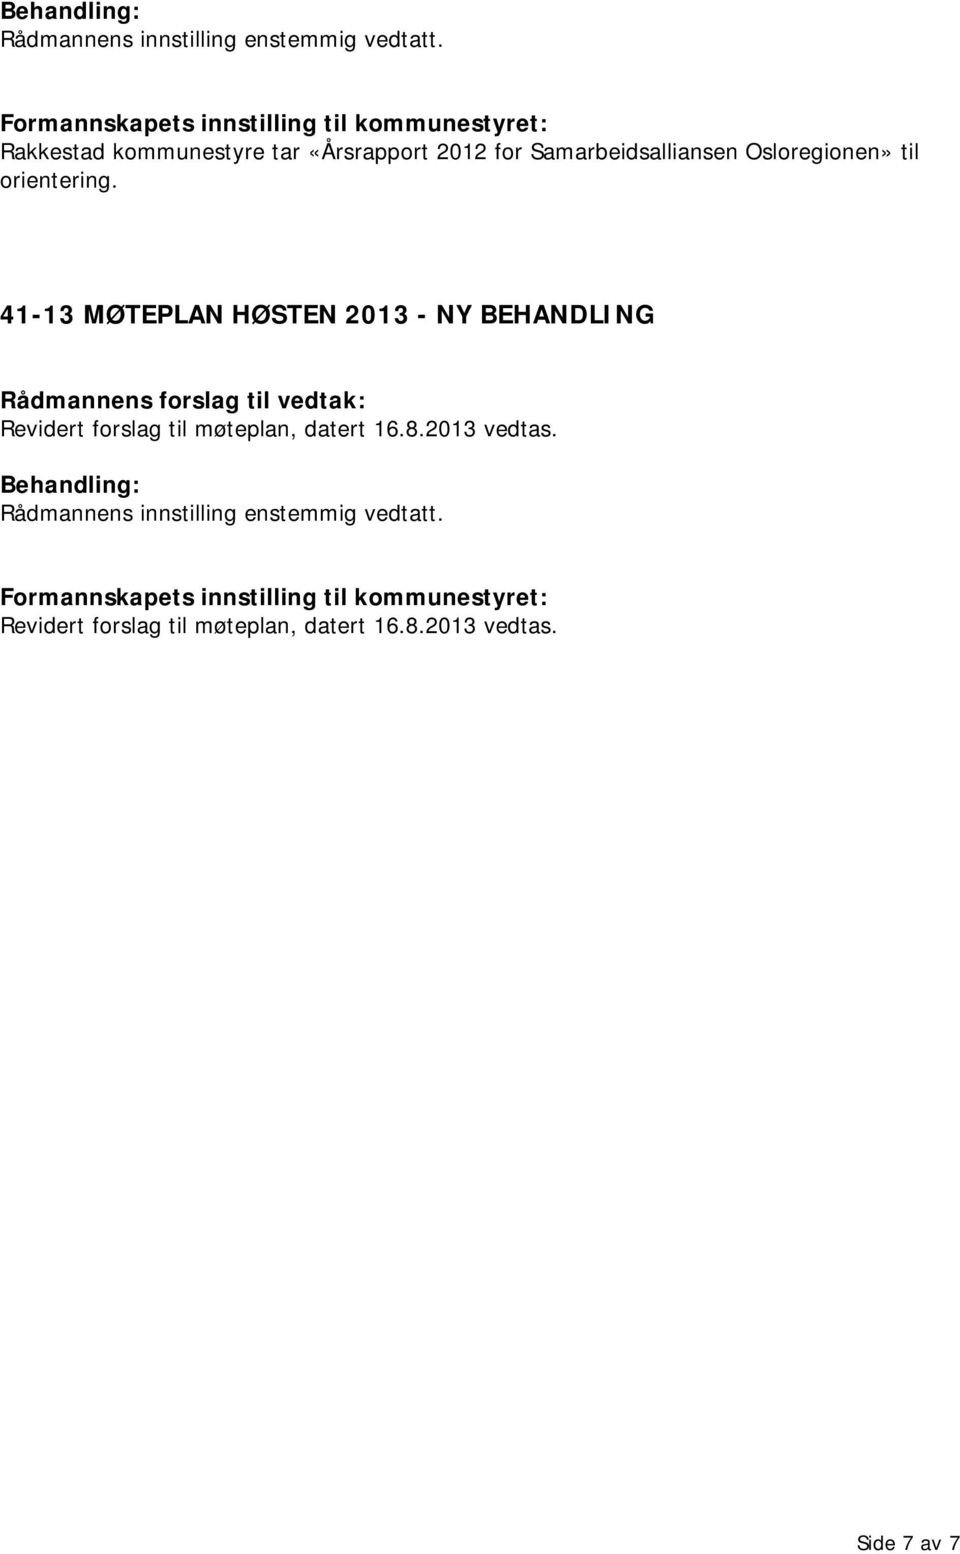 41-13 MØTEPLAN HØSTEN 2013 - NY Revidert forslag til møteplan, datert 16.8.2013 vedtas.